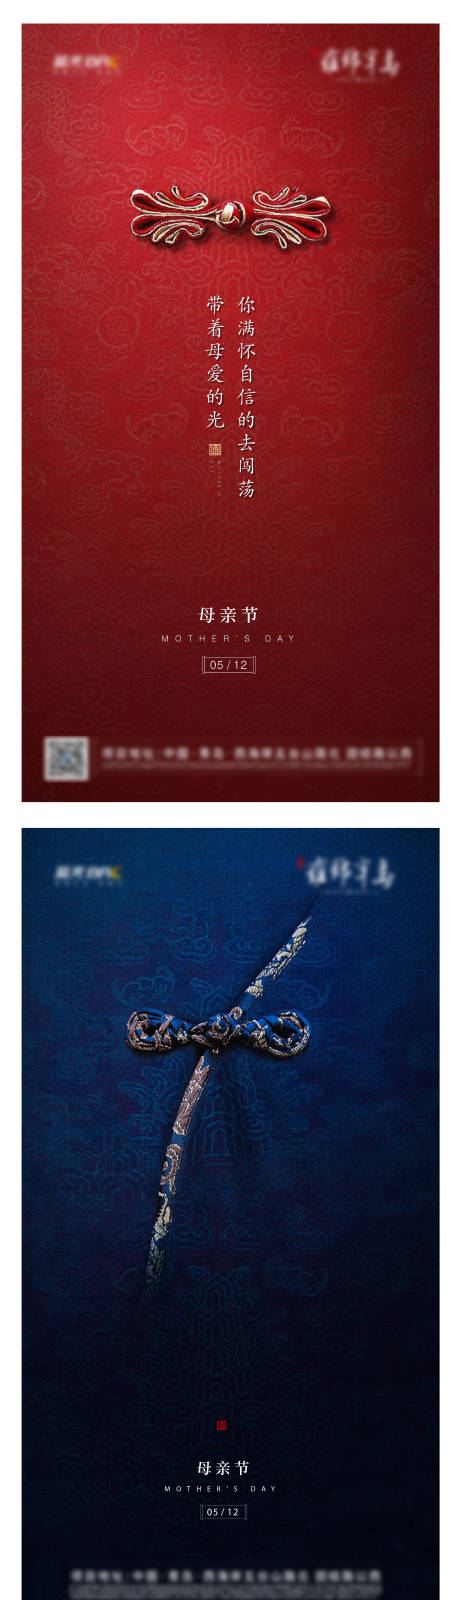 新中式母亲节系列节日单图海报